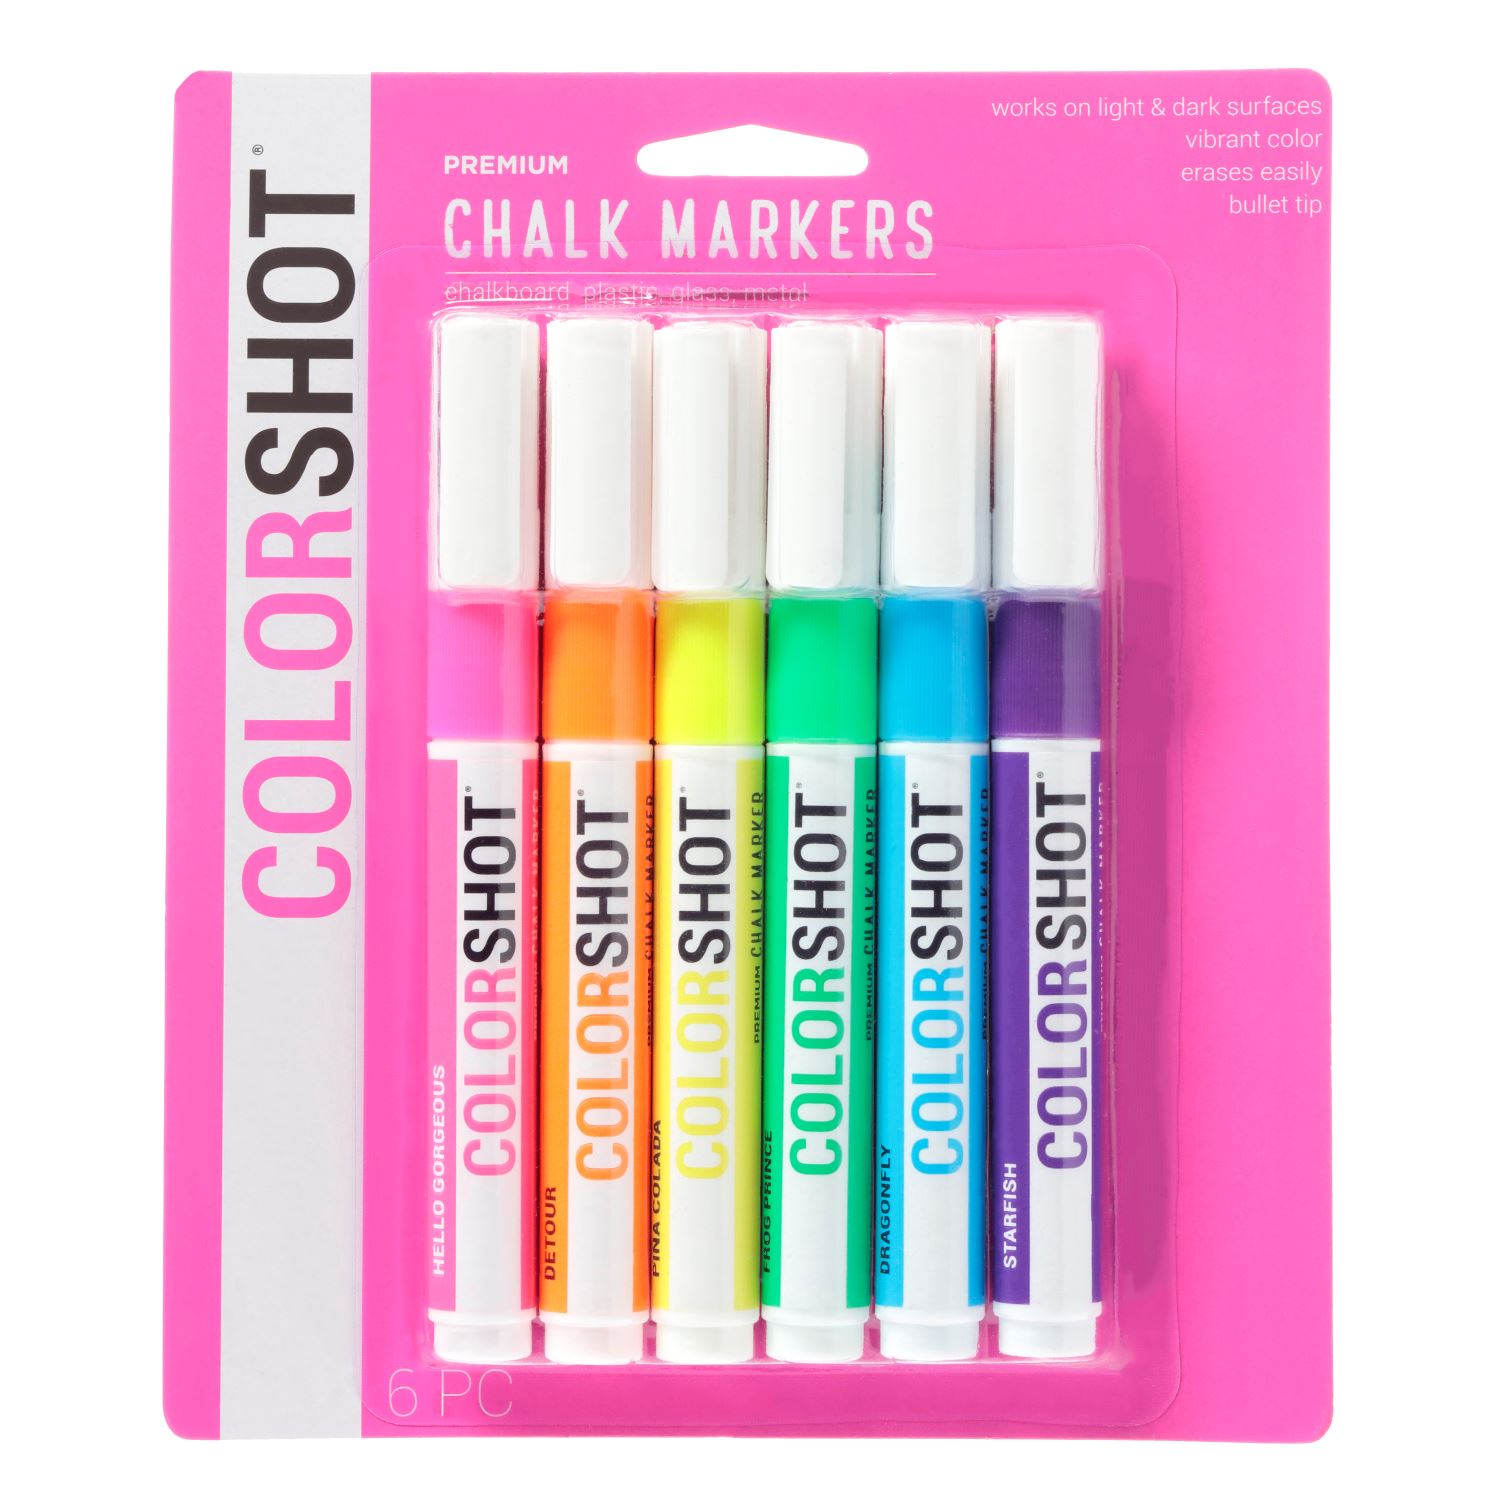 Premium Chalk Markers Bright 6 Pack | COLORSHOT Paint